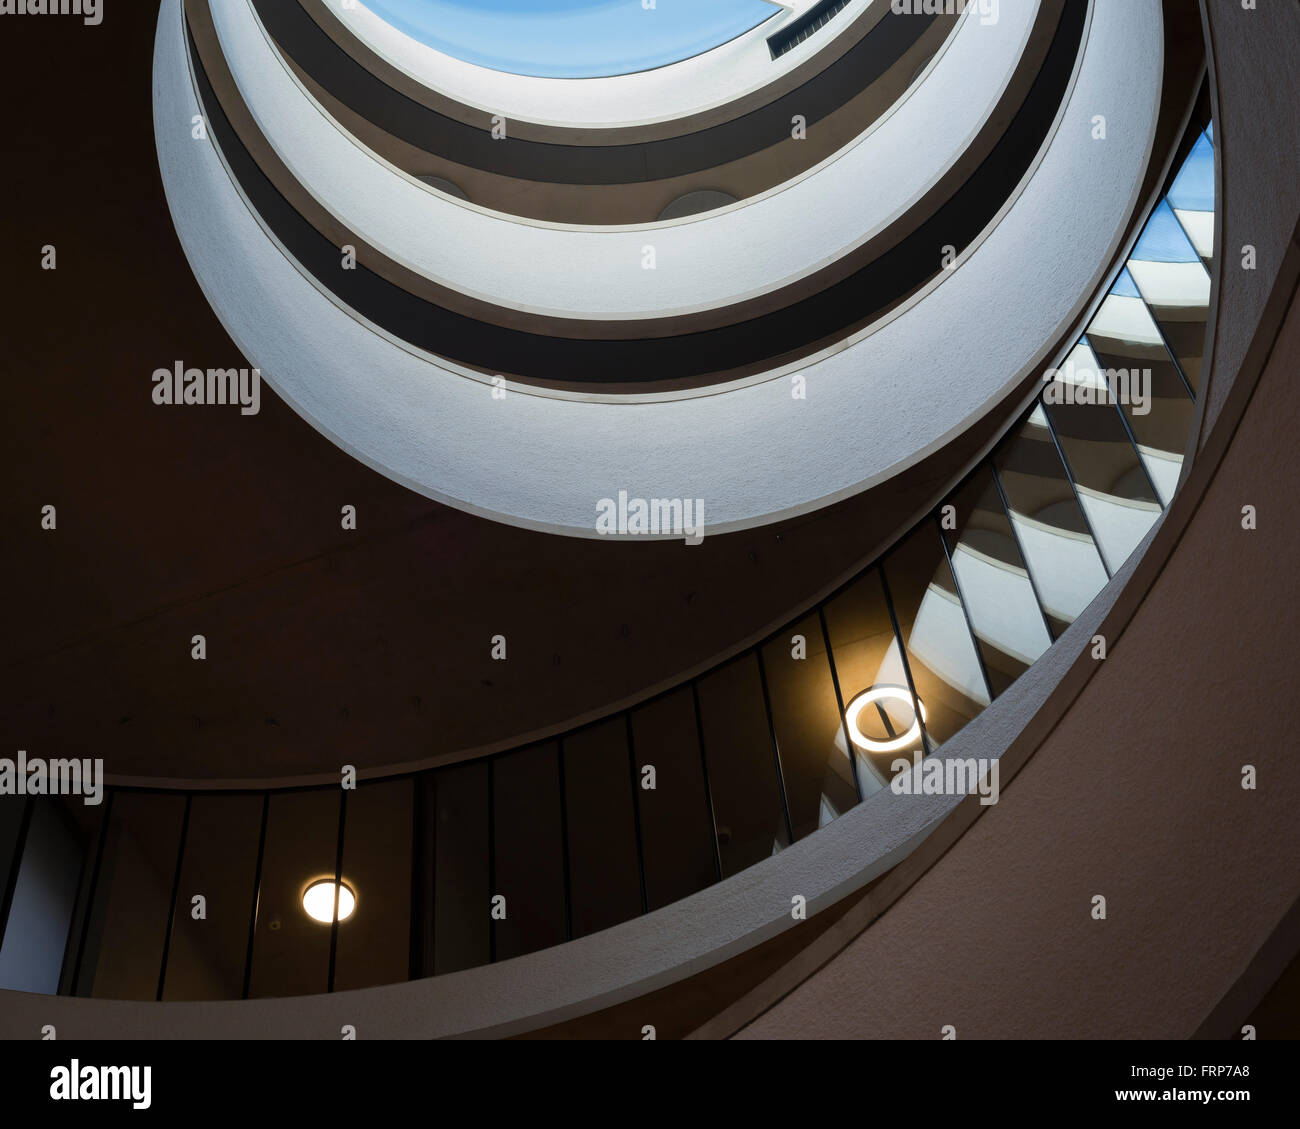 Détail de l'escalier en spirale. La Blavatnik School of Government de l'Université de Oxford, Oxford, Royaume-Uni. Architecte Banque D'Images